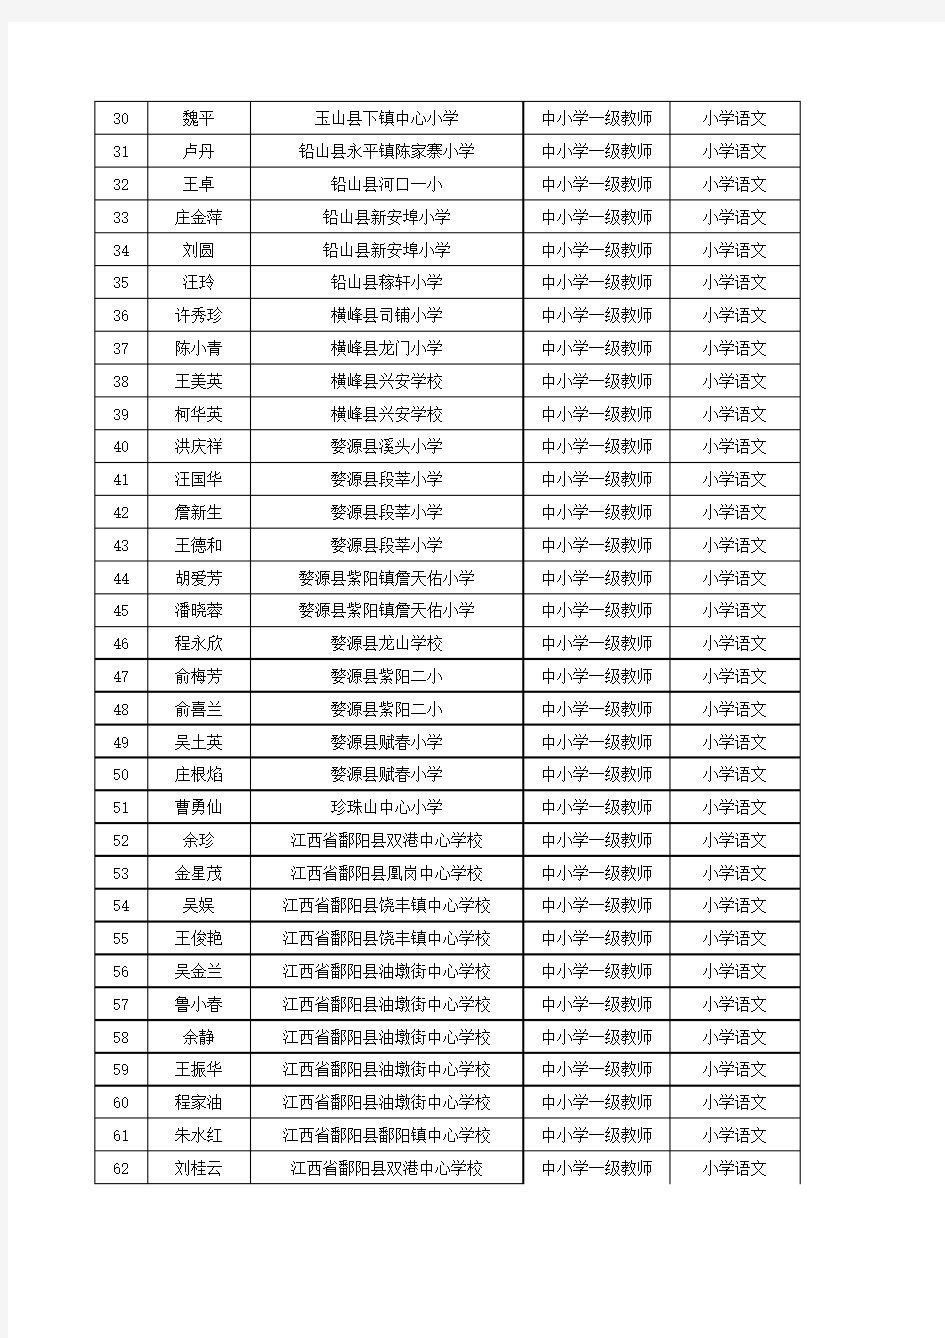 江西省上饶市中小学一级上网公示名单